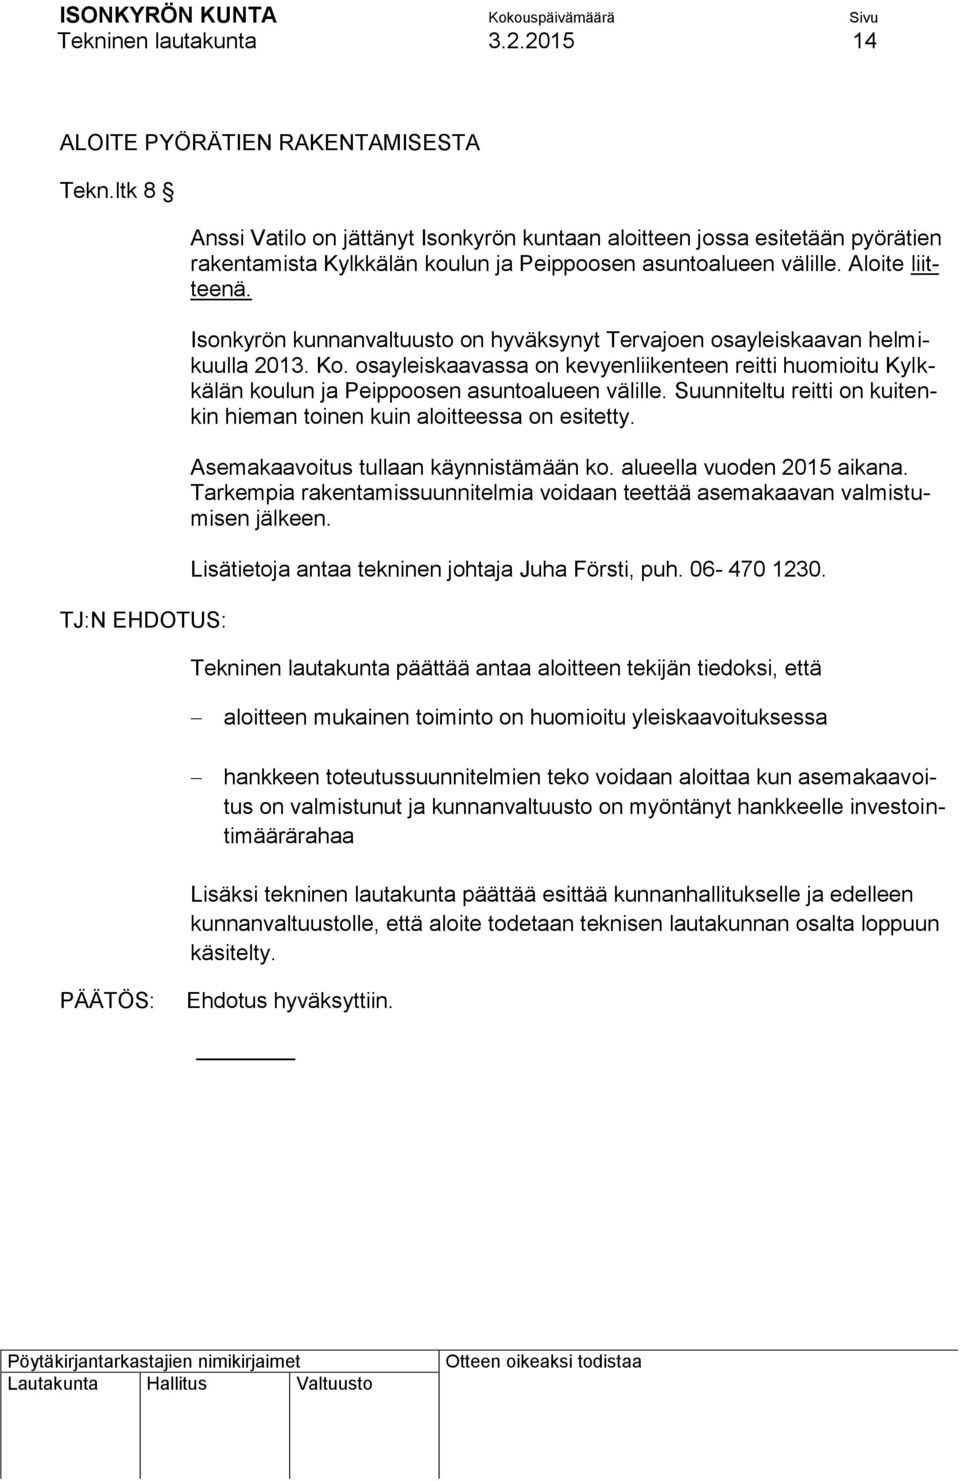 Isonkyrön kunnanvaltuusto on hyväksynyt Tervajoen osayleiskaavan helmikuulla 2013. Ko. osayleiskaavassa on kevyenliikenteen reitti huomioitu Kylkkälän koulun ja Peippoosen asuntoalueen välille.